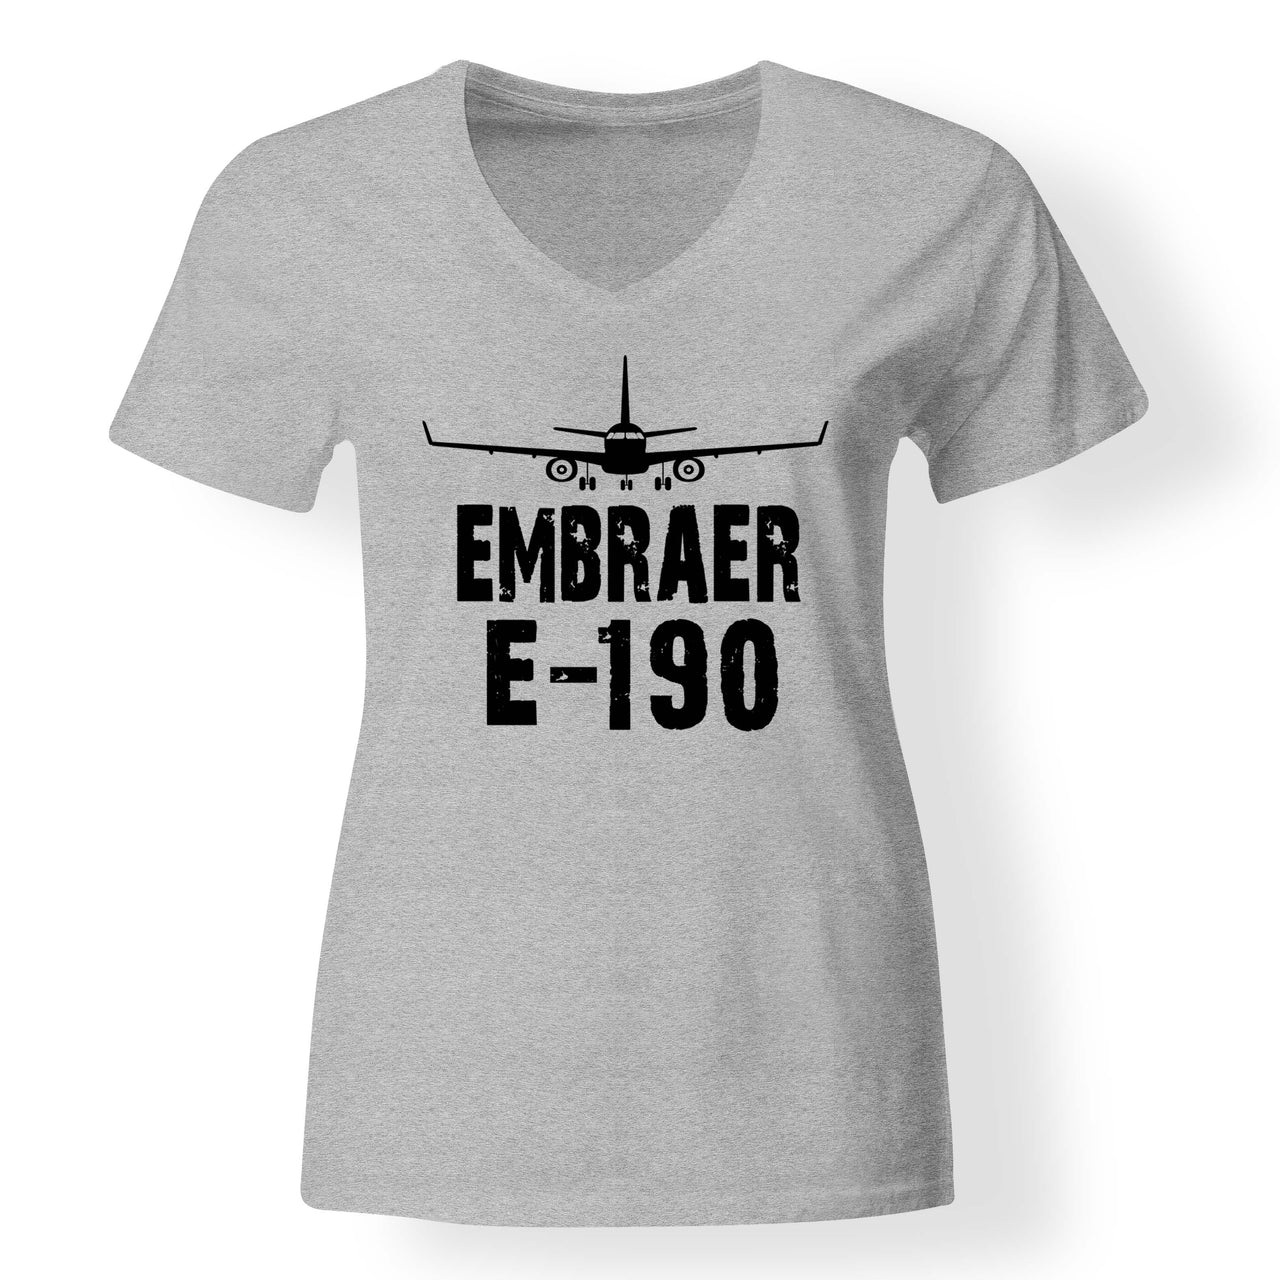 Embraer E-190 & Plane Designed V-Neck T-Shirts